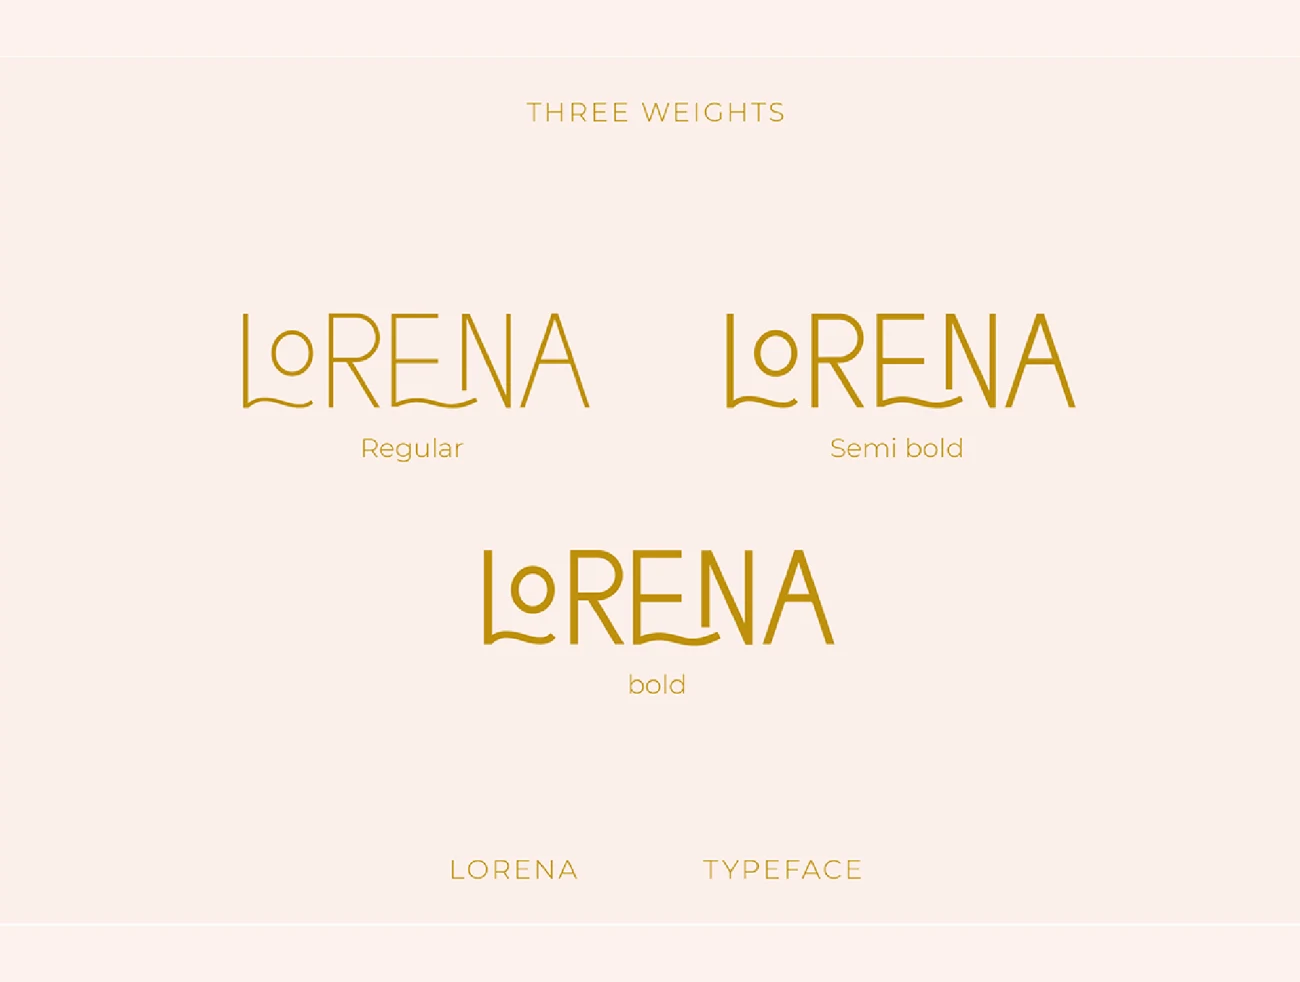 3字重全大写连体极简主义现代典雅英文字体 Lorena Typeface插图21